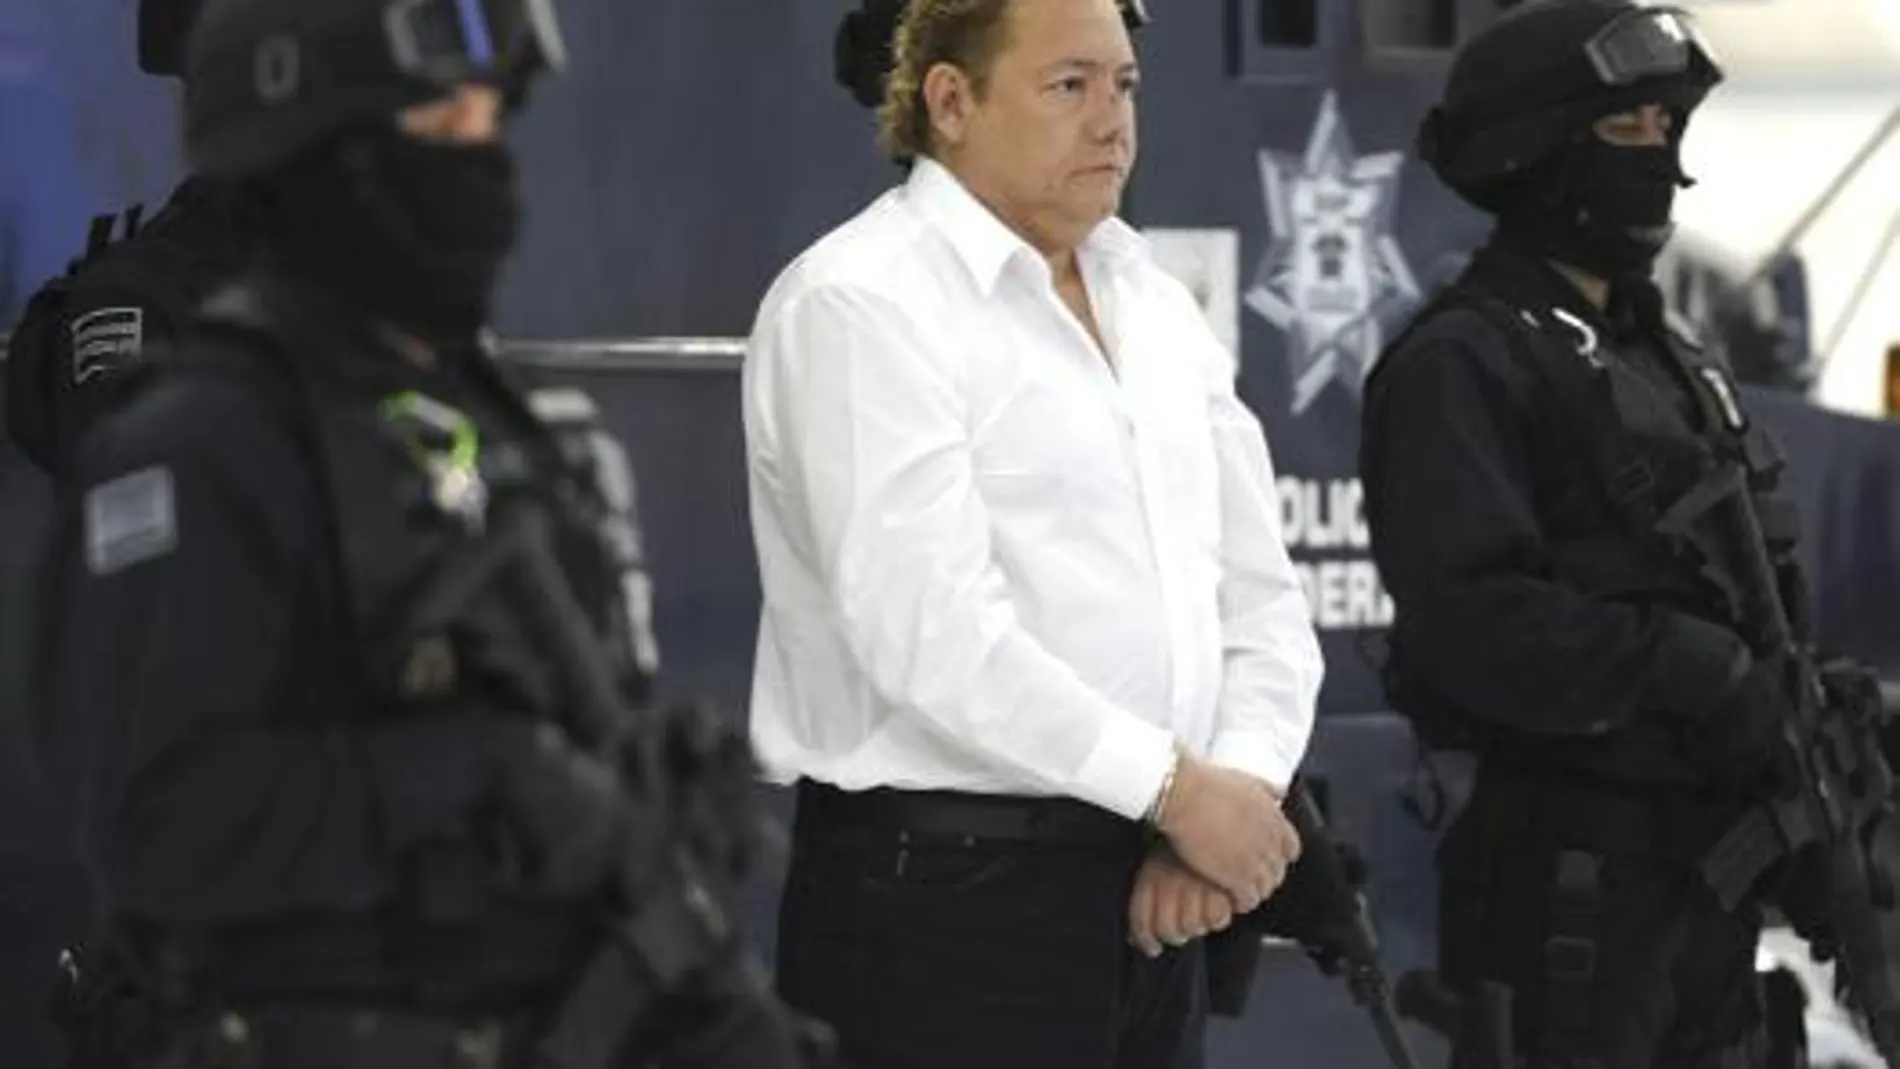 La Policía Federal muestra a José Francisco Barreto García, alias "El contador", uno de los dos implicados en el intento de homicidio contra el futbolista paraguayo Salvador Cabañas,